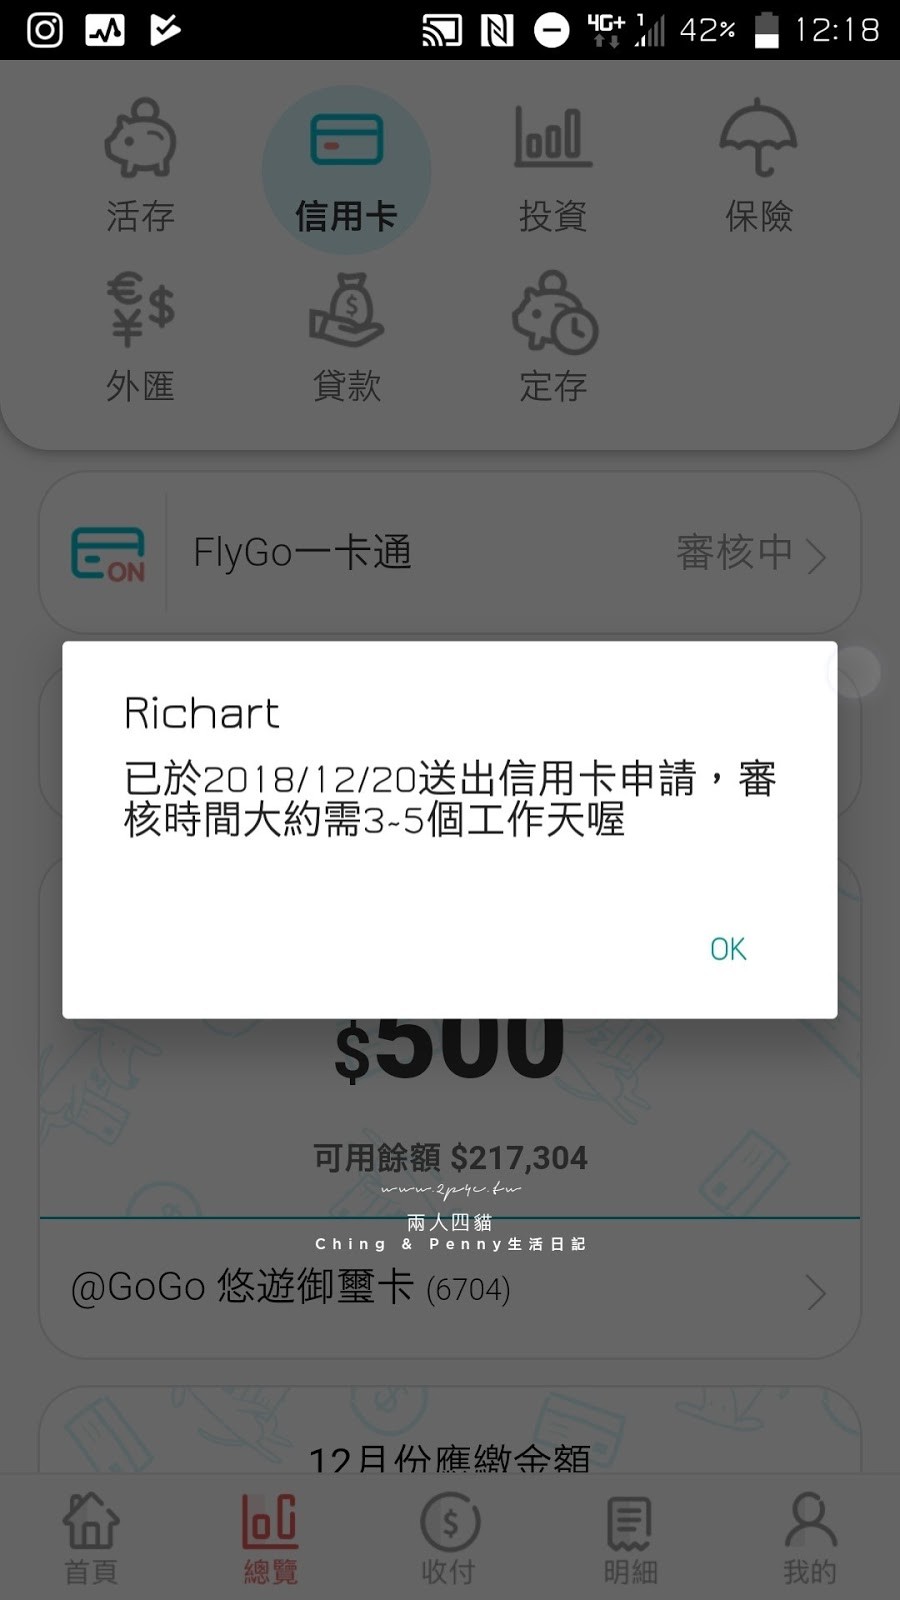 台新FlyGo卡(飛狗卡) ｜國外旅遊神卡，海外2.8現金回饋 第一手申辦流程 五分鐘完成